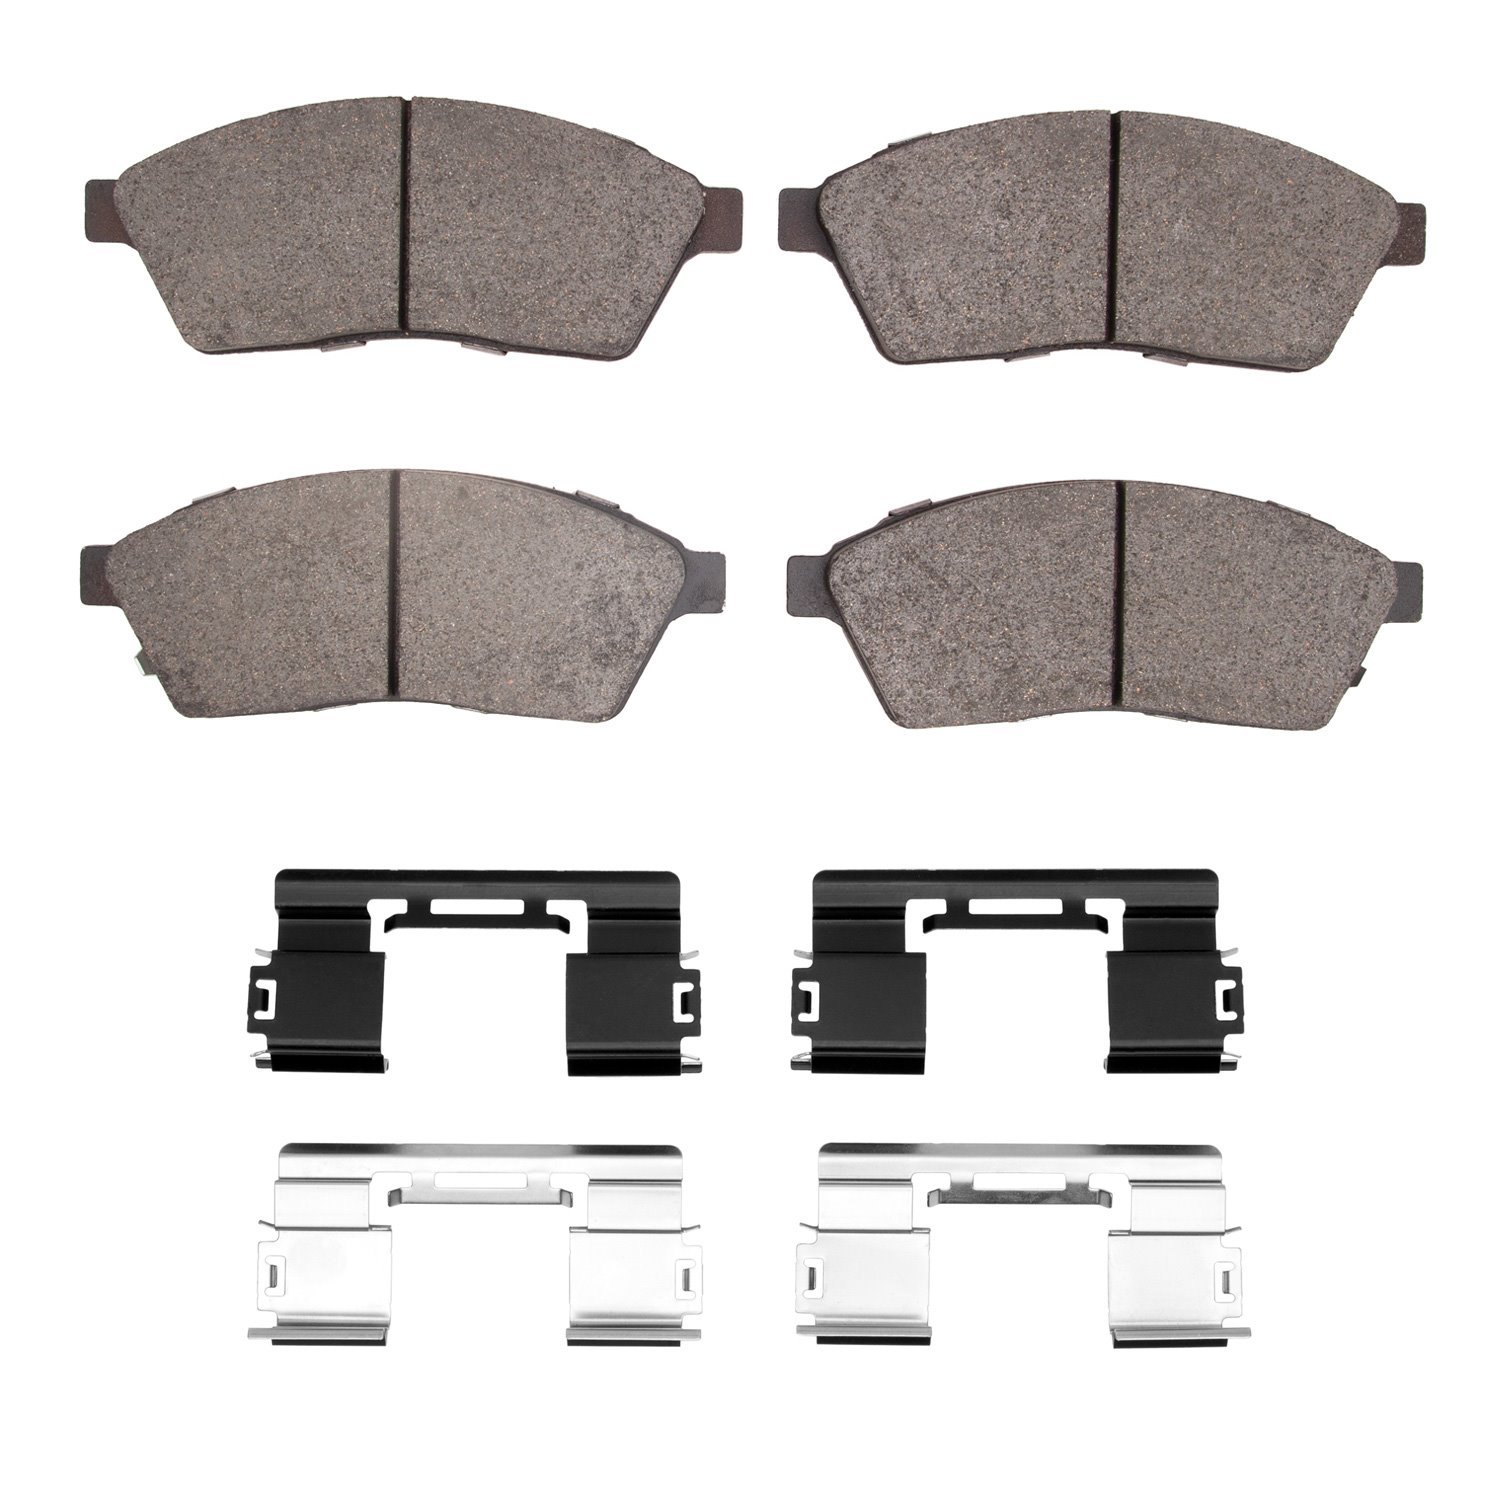 1310-1422-01 3000-Series Ceramic Brake Pads & Hardware Kit, 2010-2016 GM, Position: Front